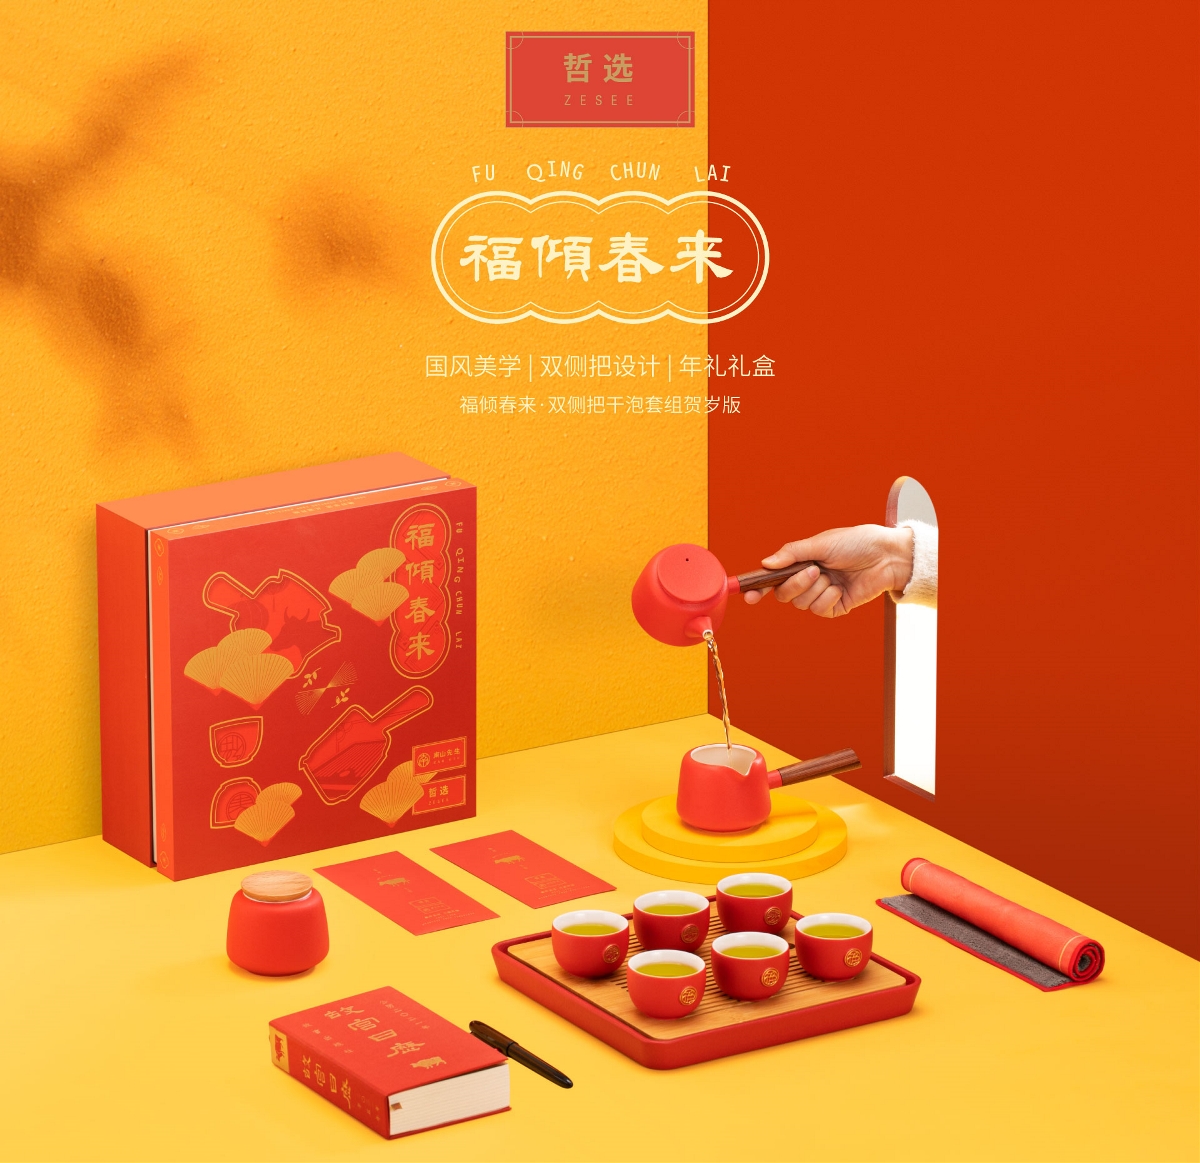 【 中国白·哲选 】2021哲选新年礼盒，茶具 陶瓷礼品 惊艳来袭！